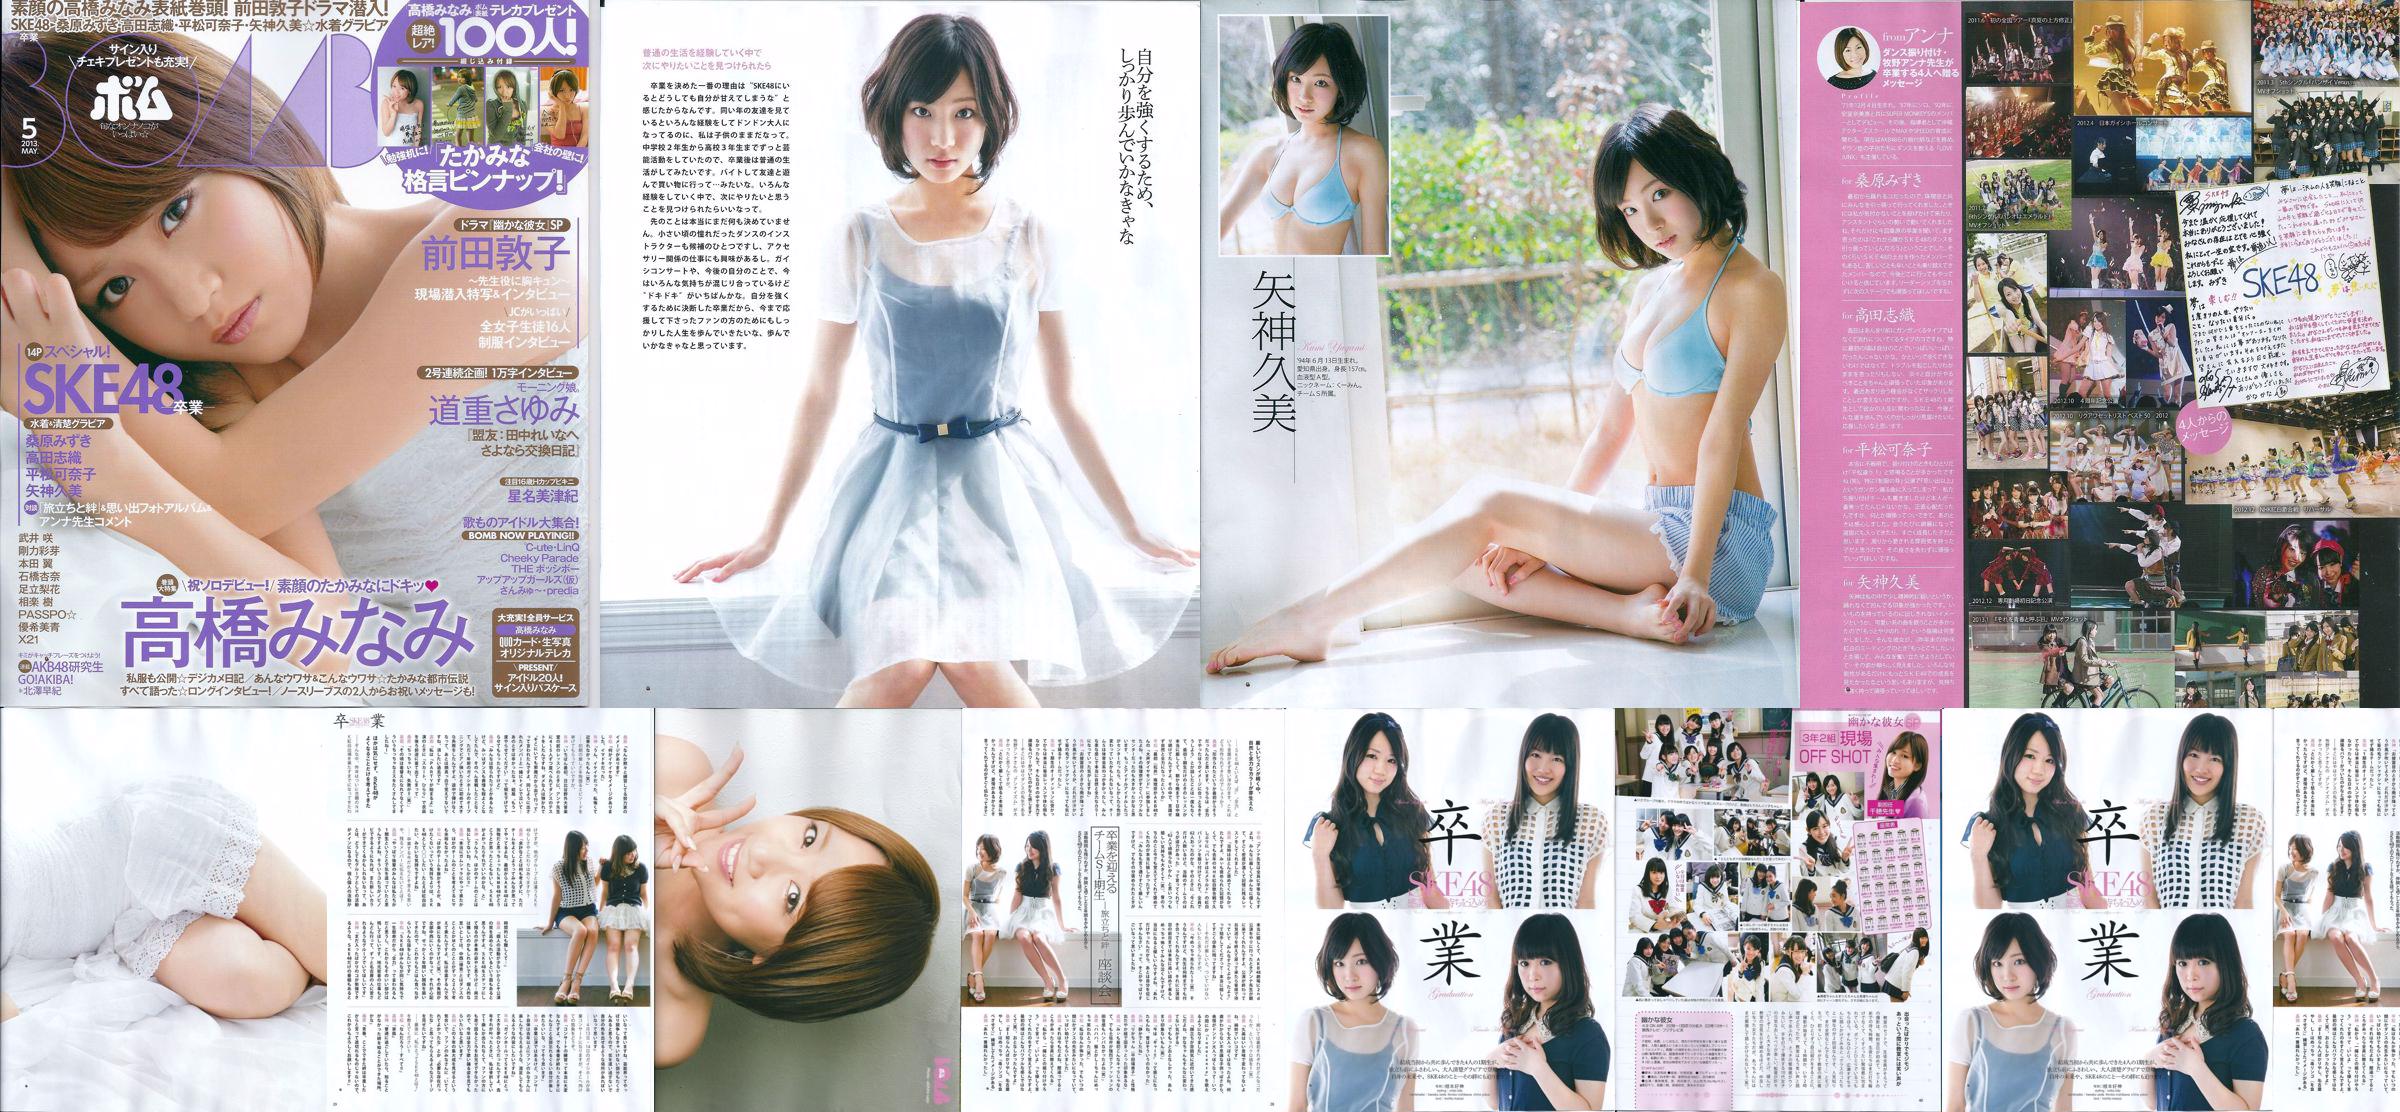 [Bomb Magazine] 2013 No.05 Kumi Yagami Minami Takahashi Atsuko Maeda Foto No.48abd1 Pagina 4